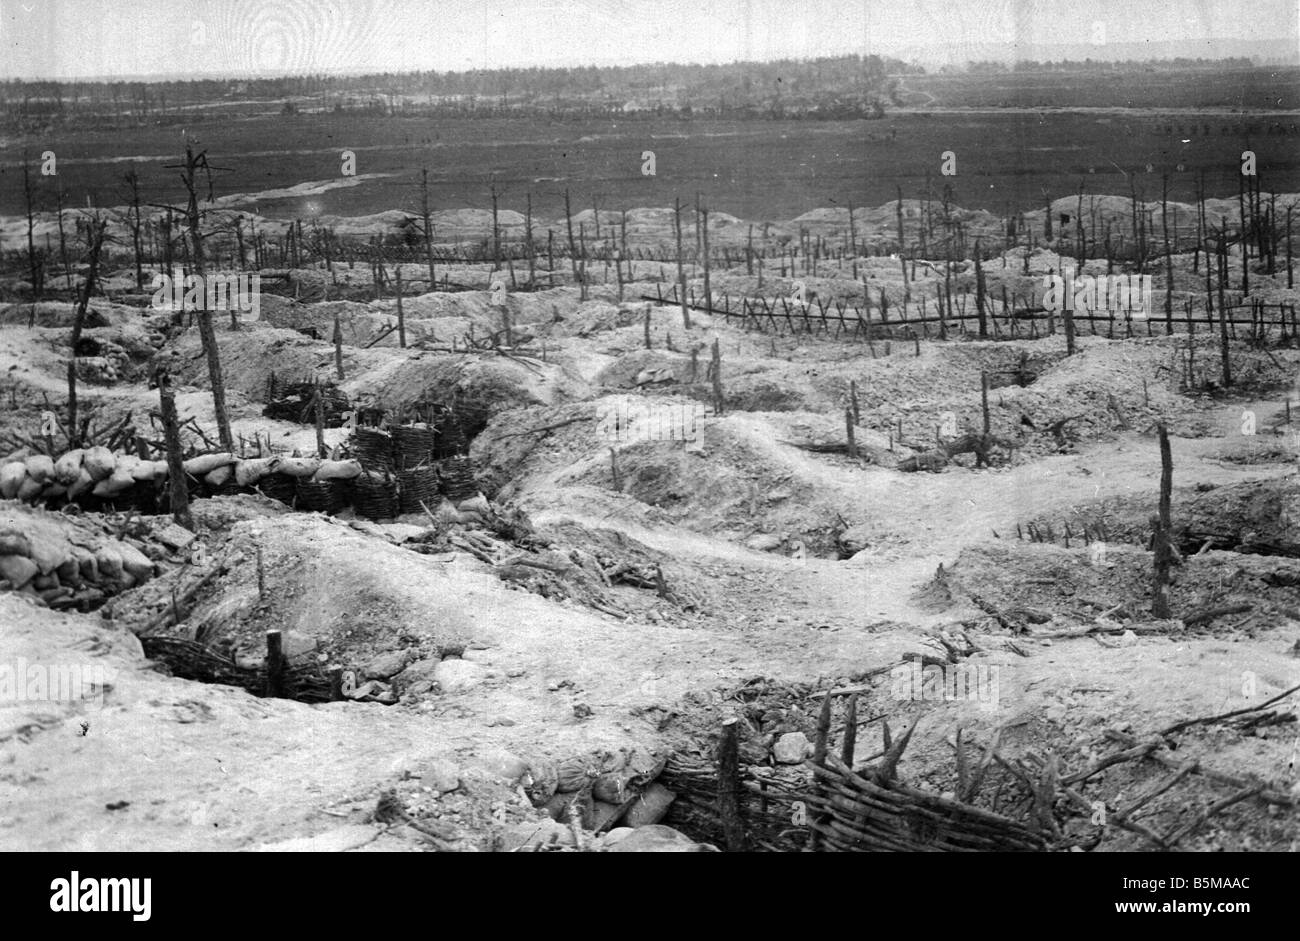 2 G55 W1 1915 21 E WWI deutschen Stellungen am Sabot 1915 Geschichte WWI Western Front deutsche Positionen in den Wald Sabot nach werden Stockfoto